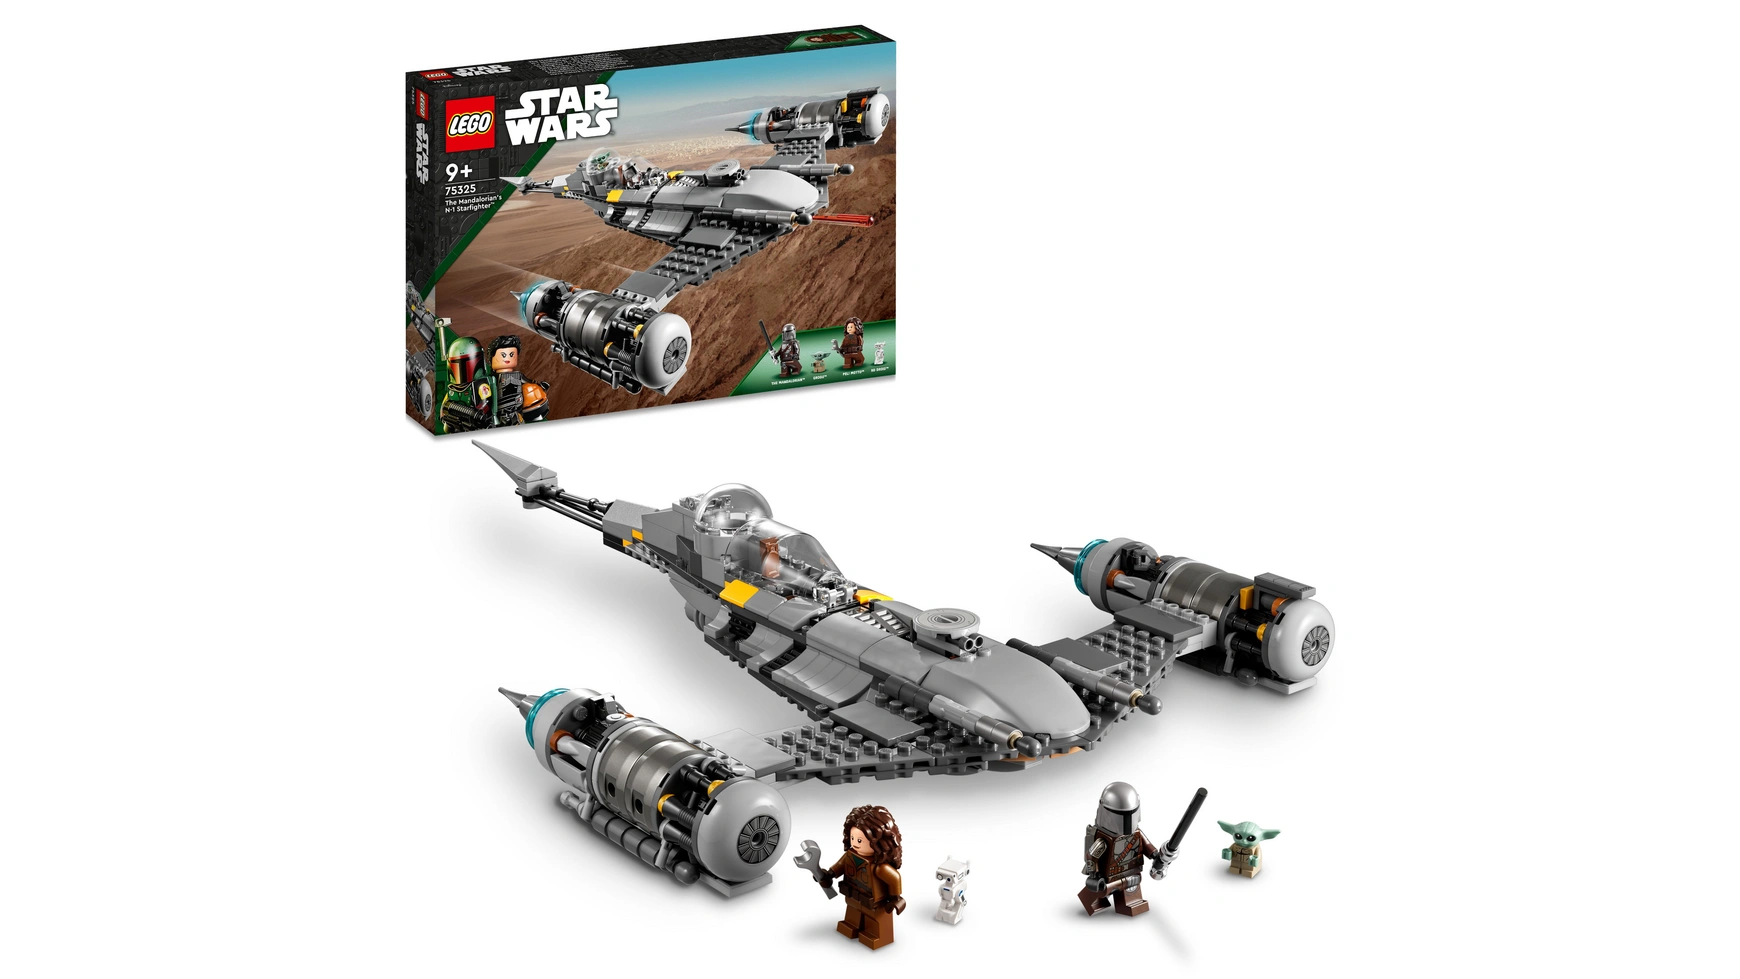 Lego Star Wars Набор Звездный истребитель Мандалорца Н-1 конструктор lego star wars 75326 тронный зал бобы фетта